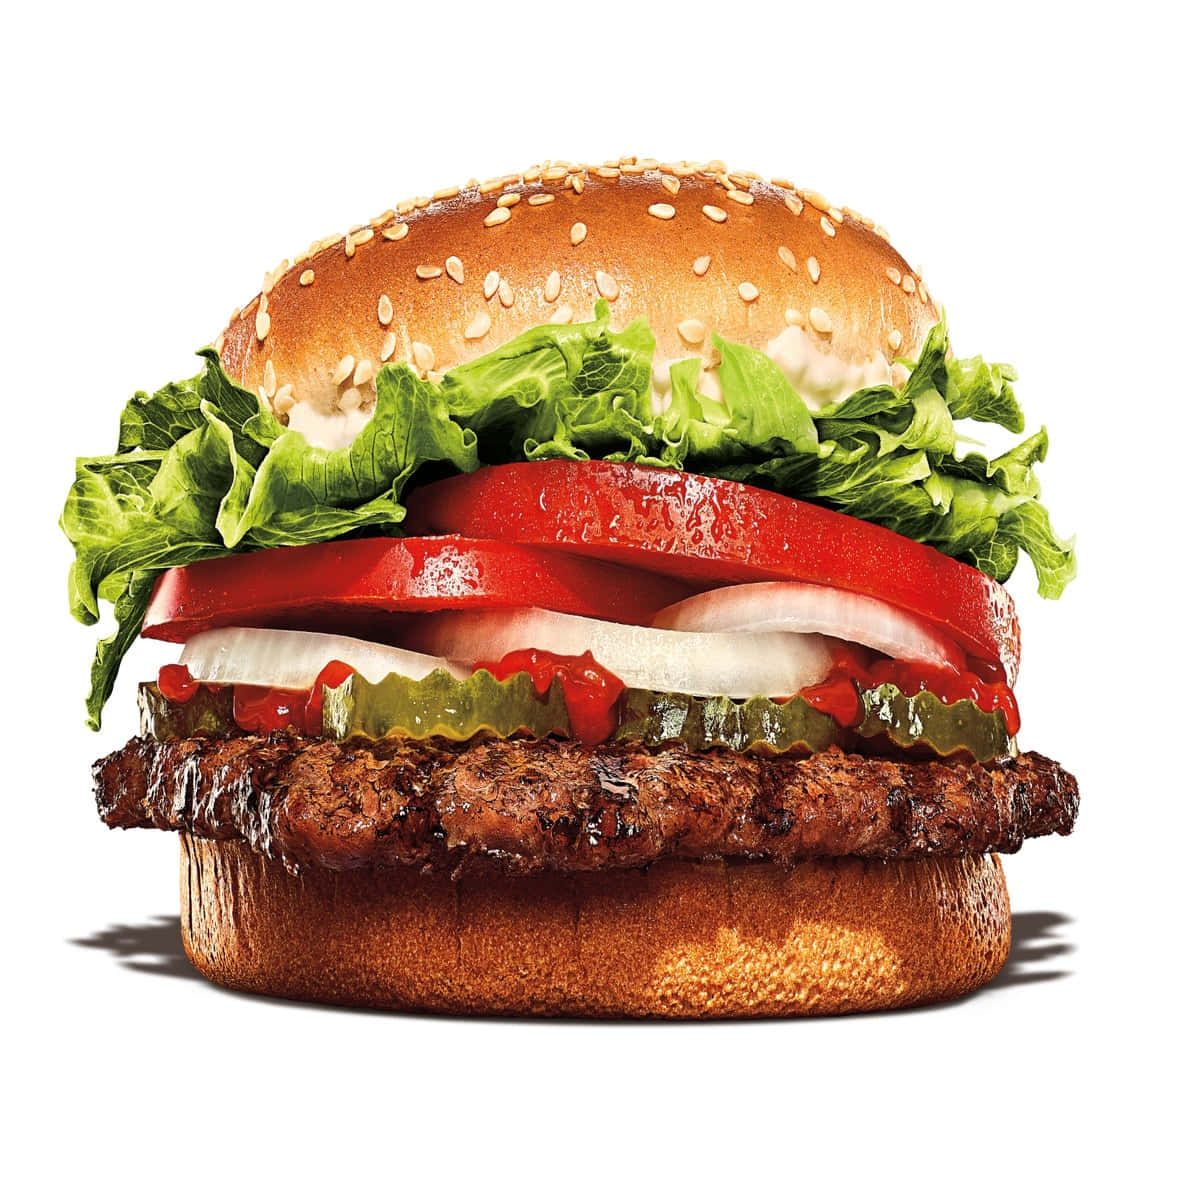 Soddisfale Tue Voglie Con I Classici Di Burger King!